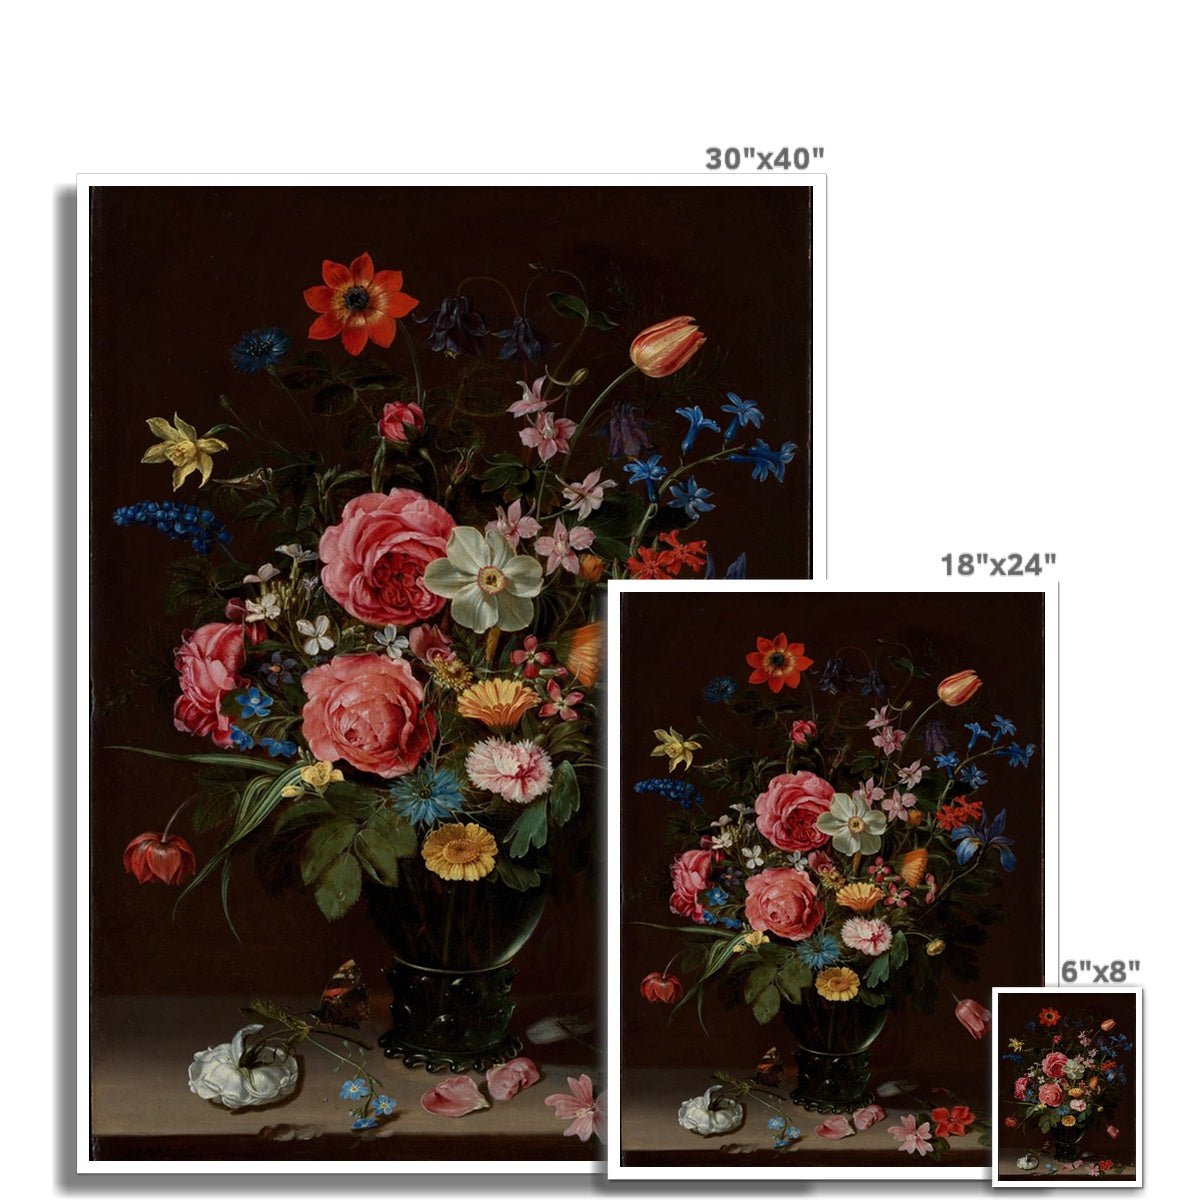 A Bouquet of Flowers, Clara Peeters, 1612 Hahnemühle German Etching Print